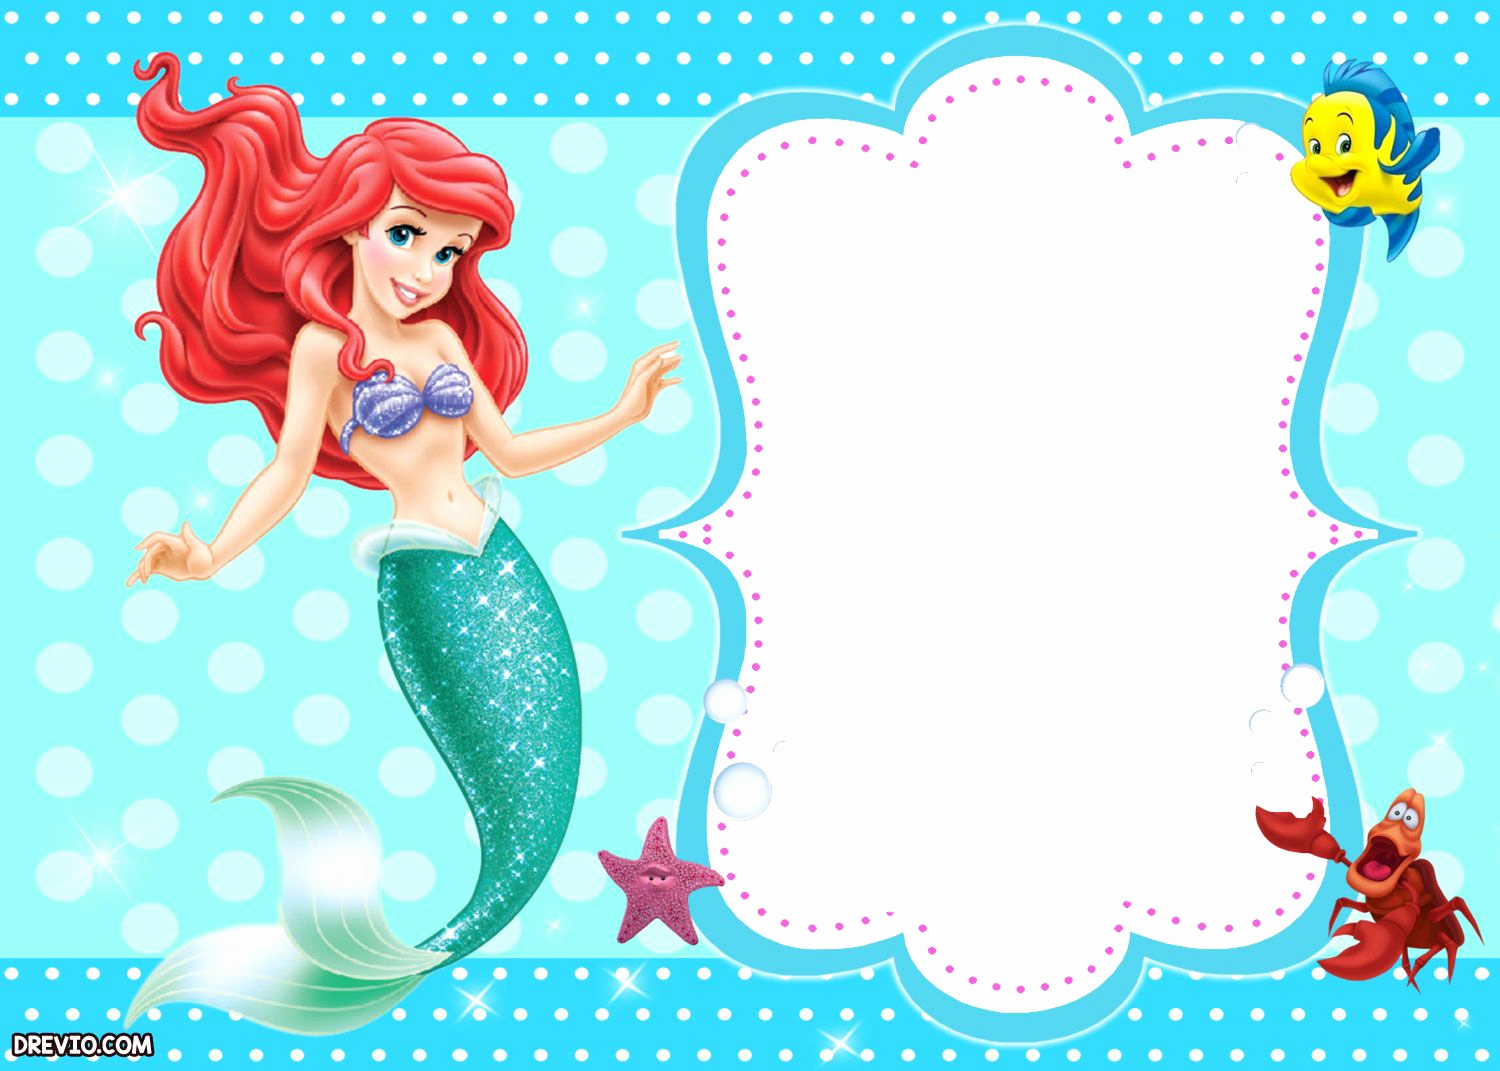 Little Mermaid Invitation Ideas Inspirational Updated Free Printable Ariel the Little Mermaid